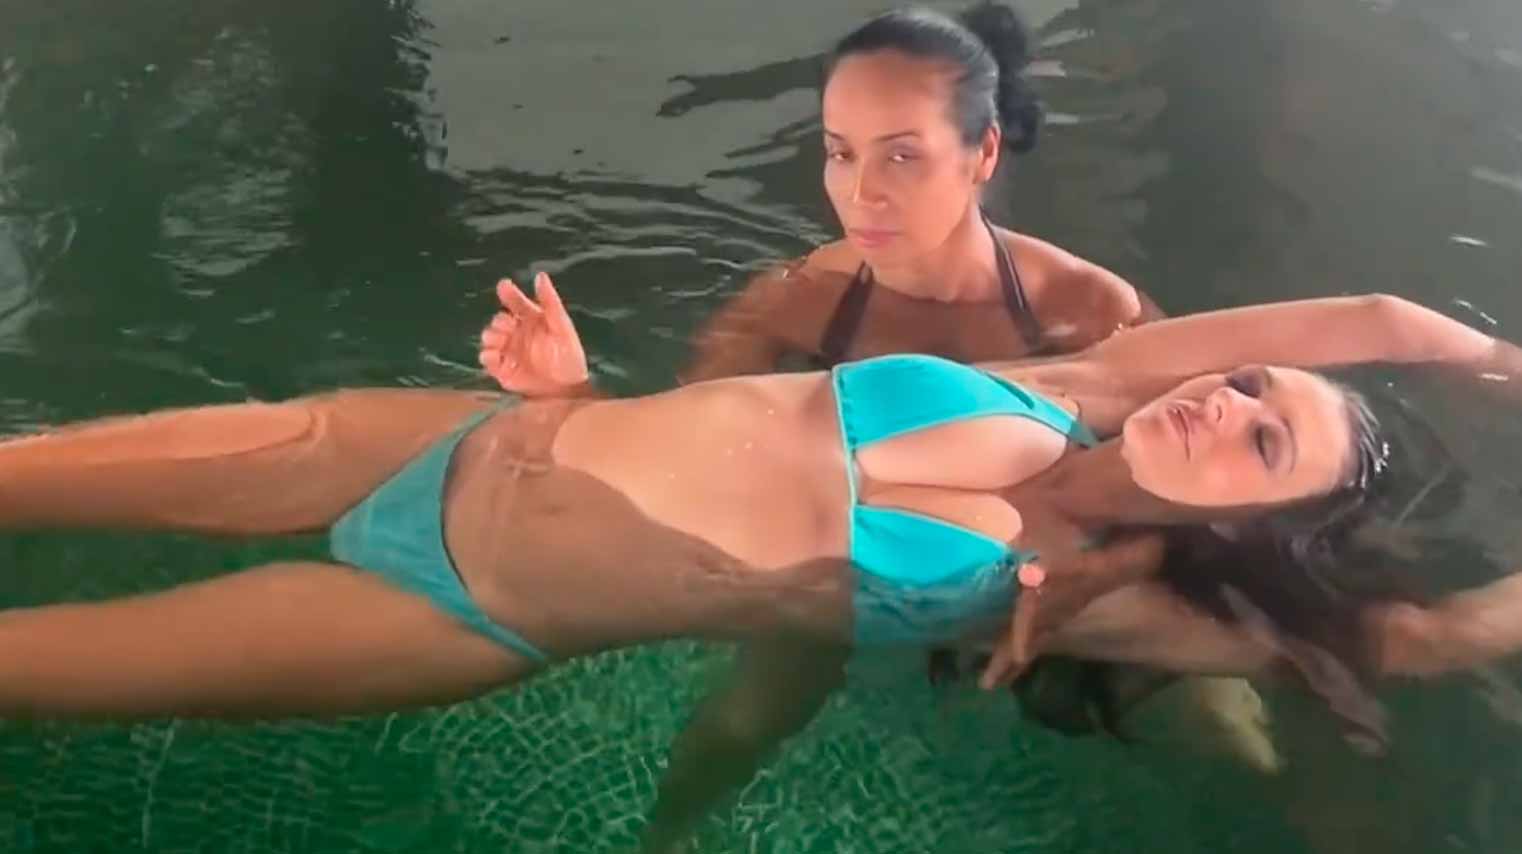 Elizabeth Hurleyová dostává relaxační masáž ve vodě v nejlepším lázeňském resortu na světě. Fotografie a video: Reprodukce Instagram @elizabethhurley1